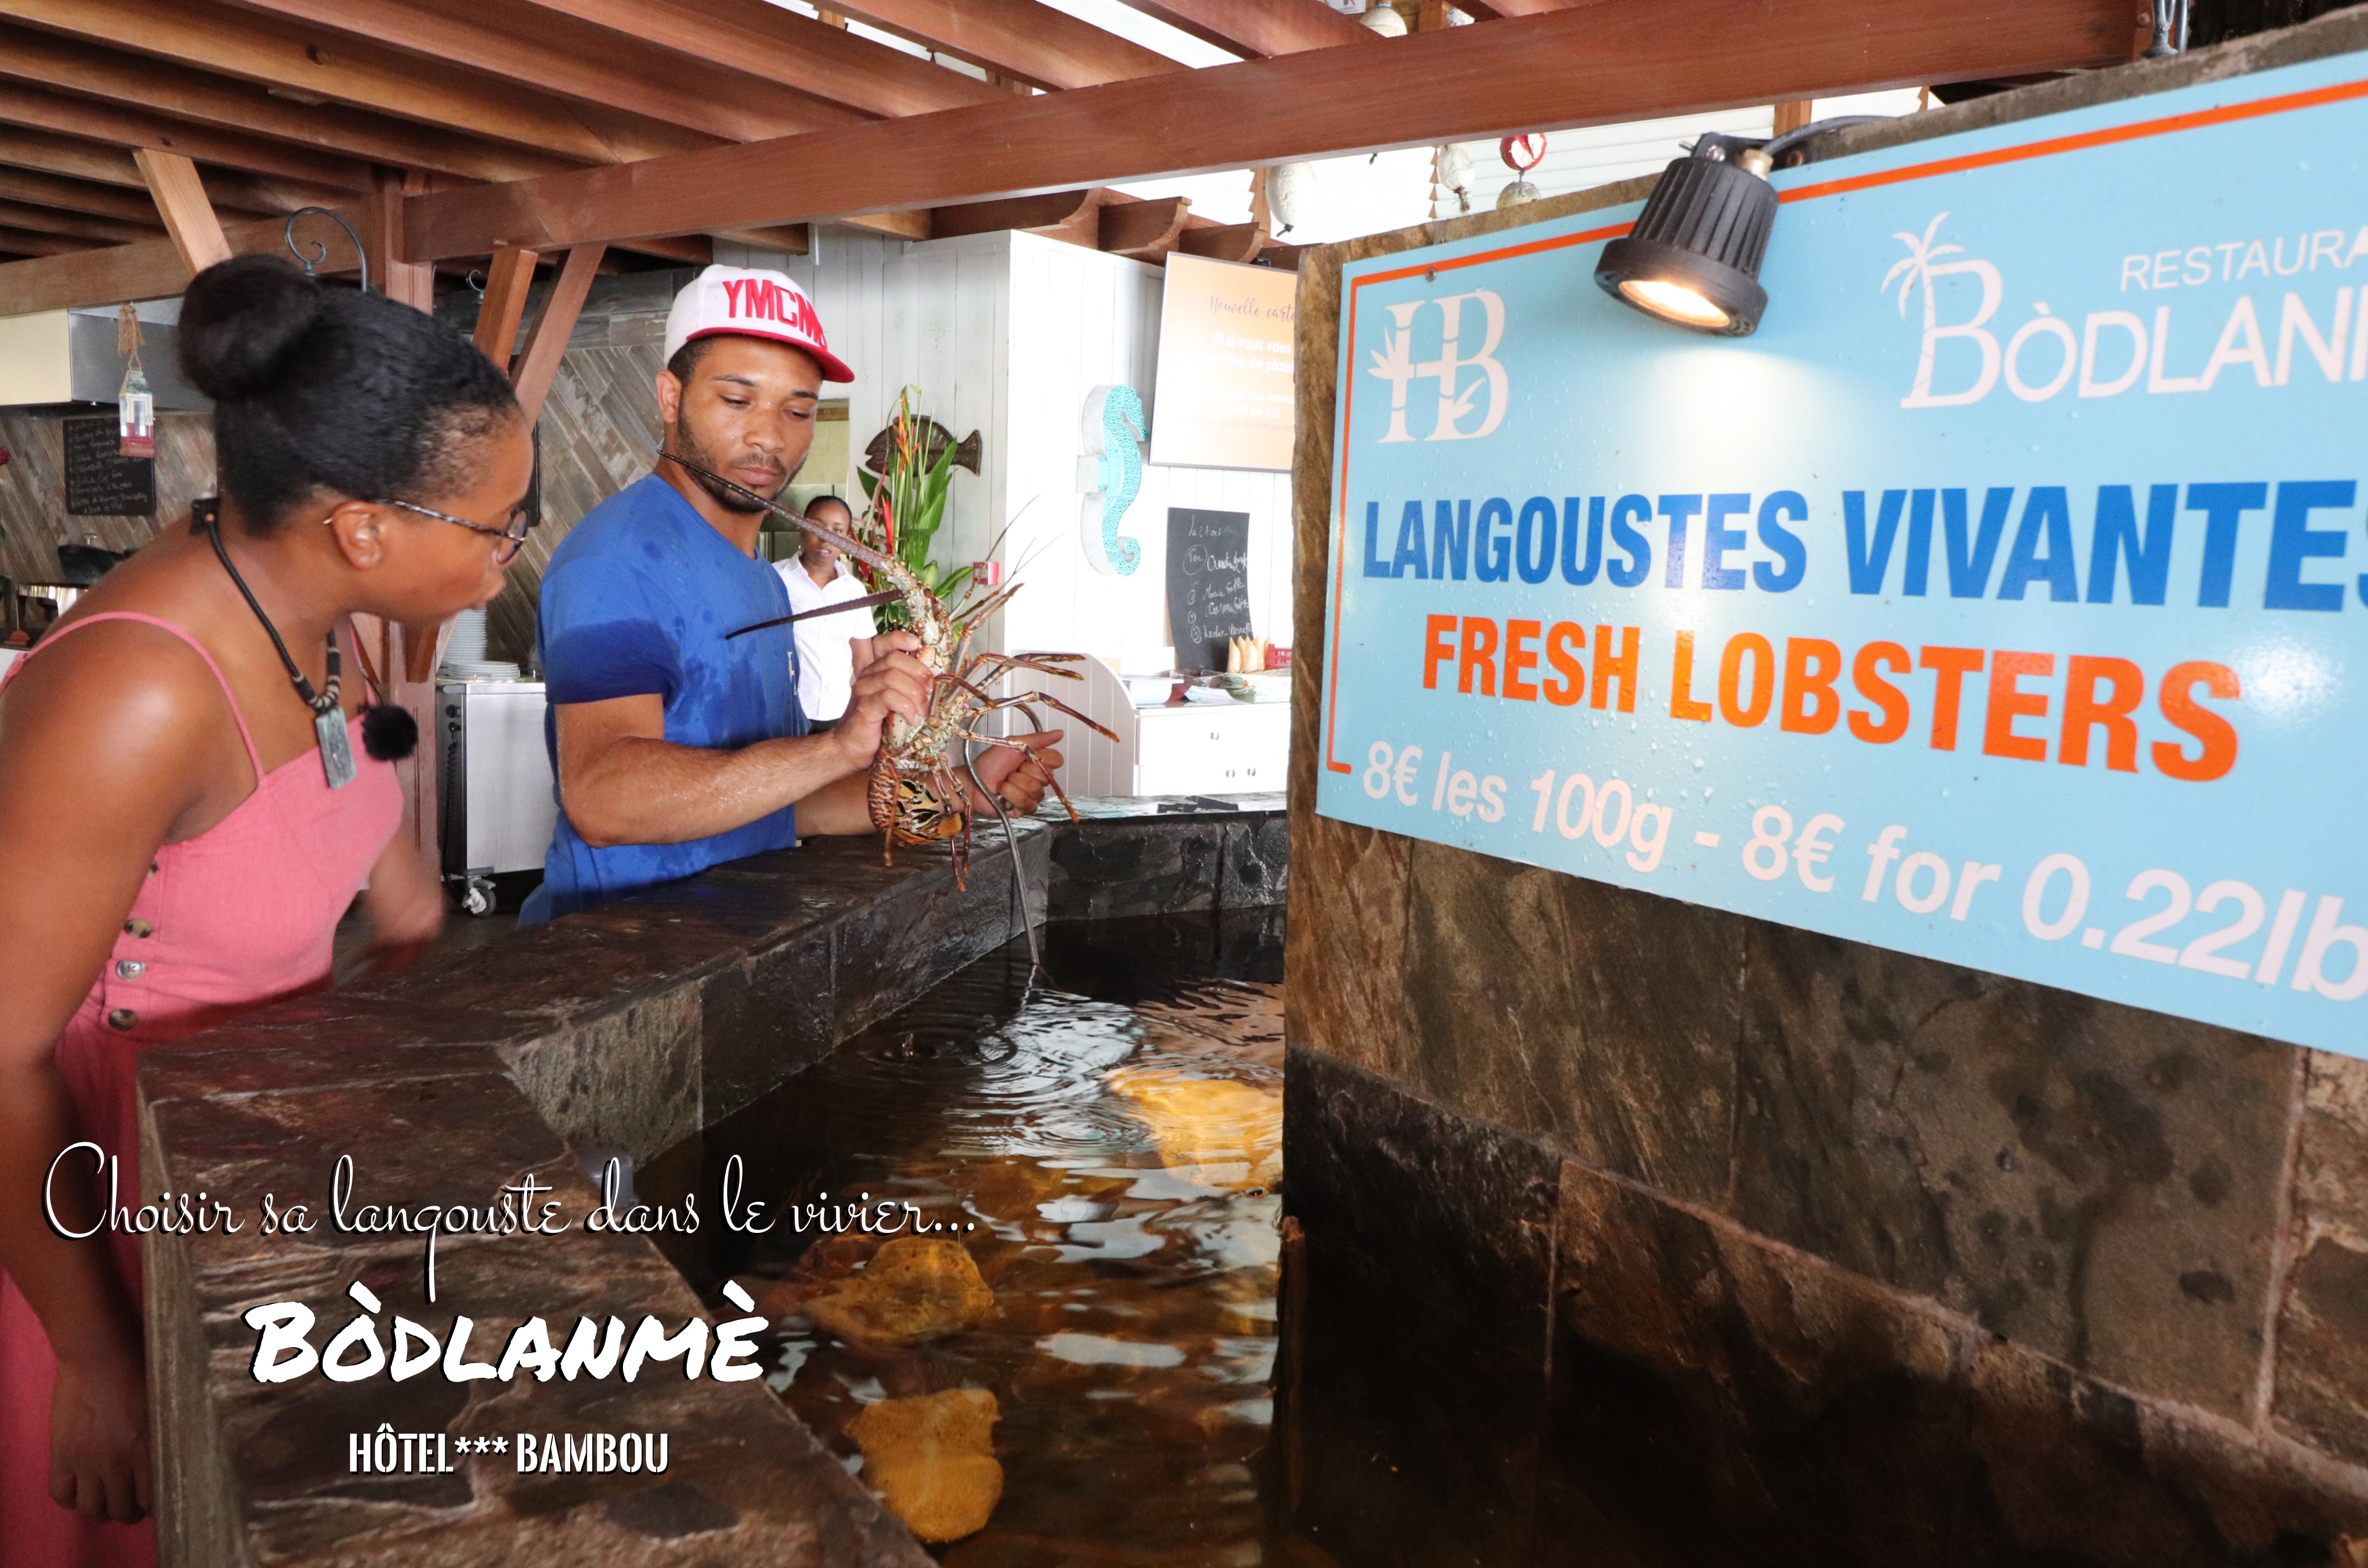 Restaurant Martinique | Bodlanmè Hotel Bambou